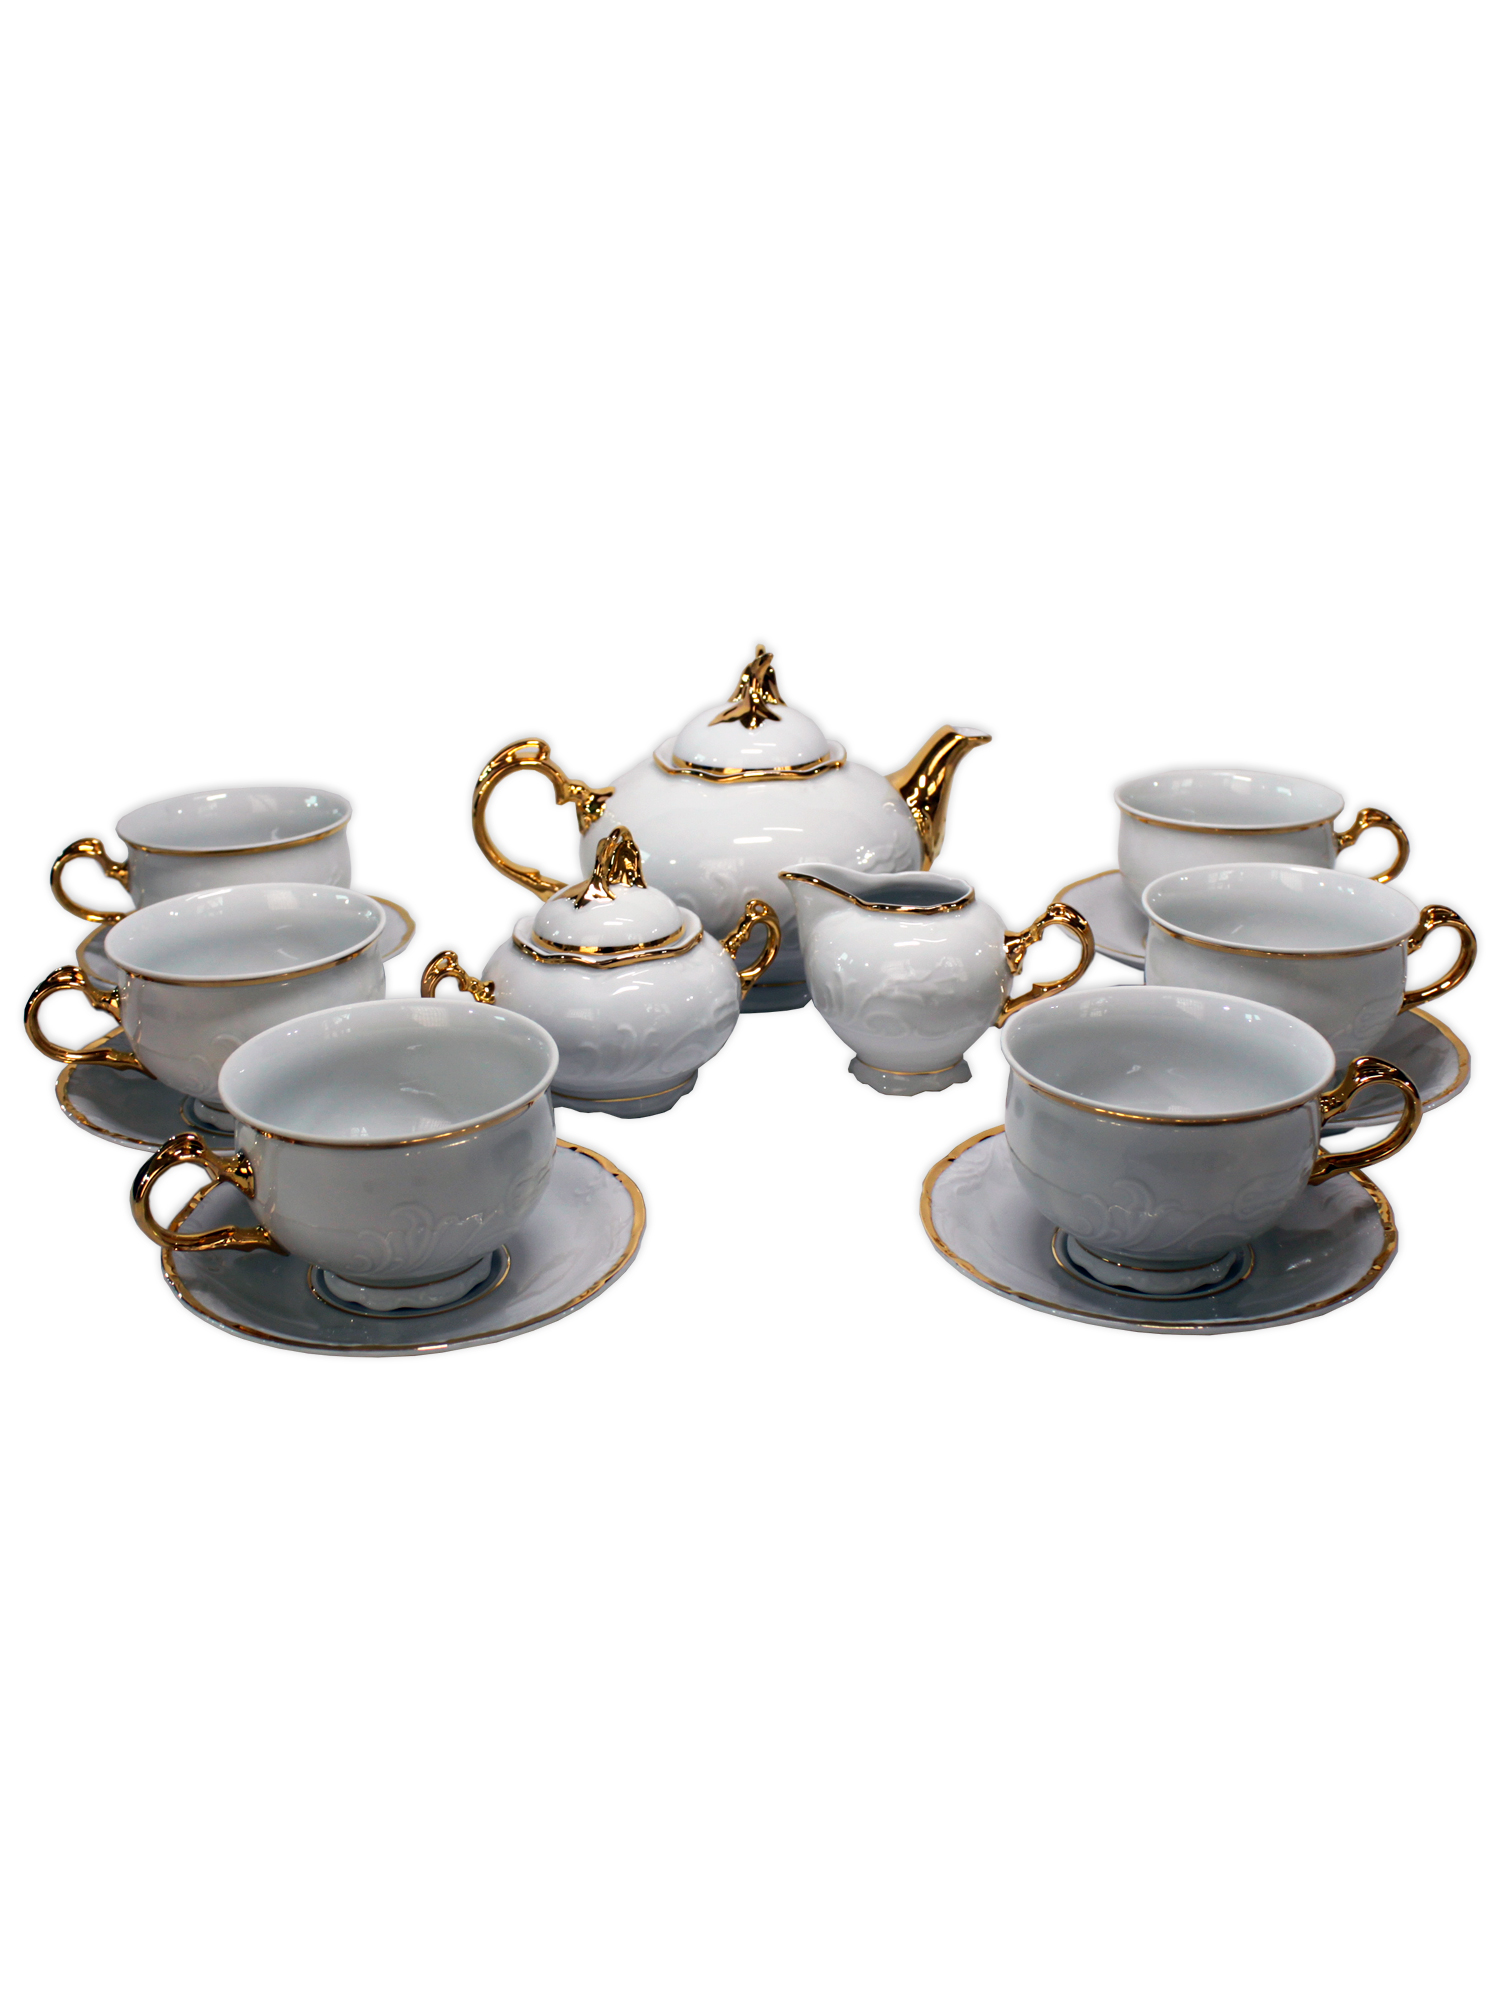 Чайный сервиз Tulip на 6 персон 17 предметов декор Отводка золото. Фарфор Тхун, Чехия.